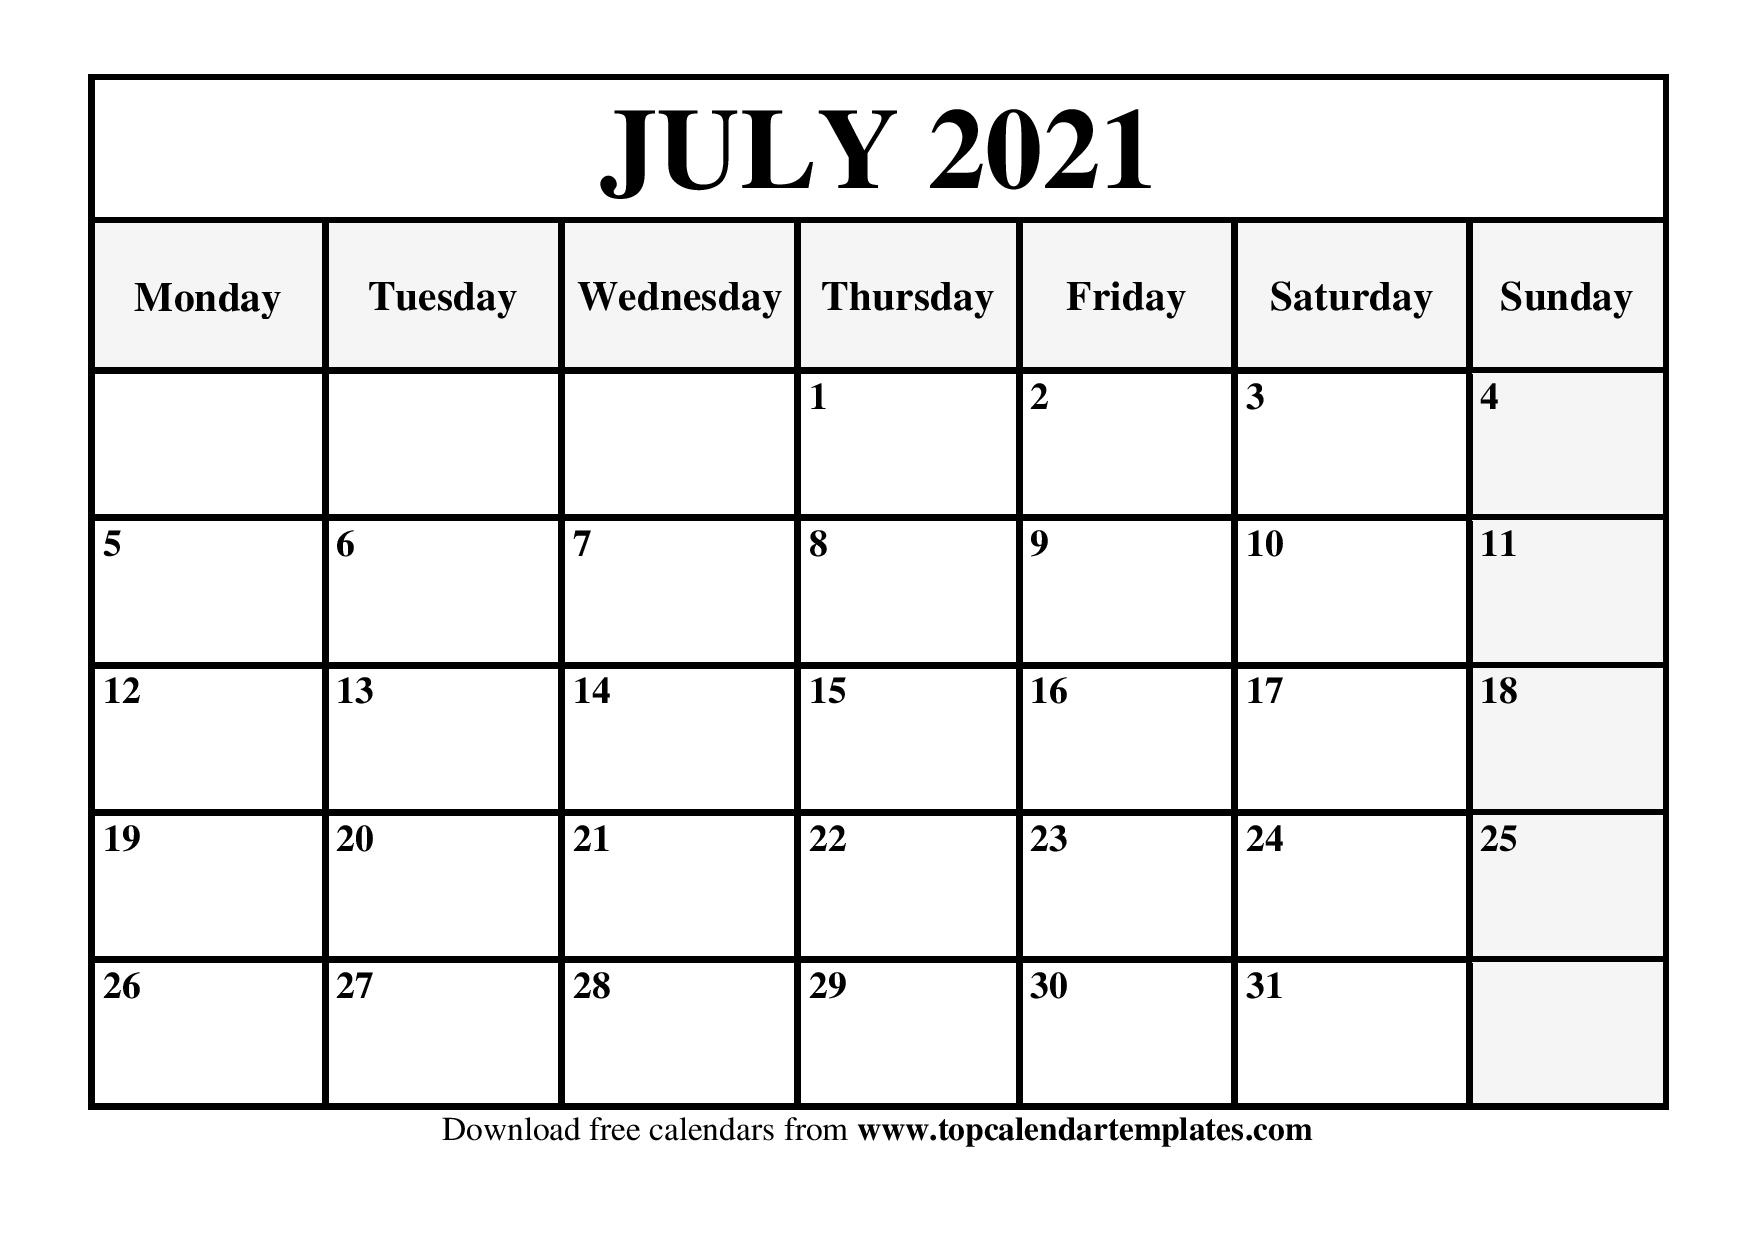 Free July 2021 Printable Calendar In Editable Format July And August 2021 Printable Calendar